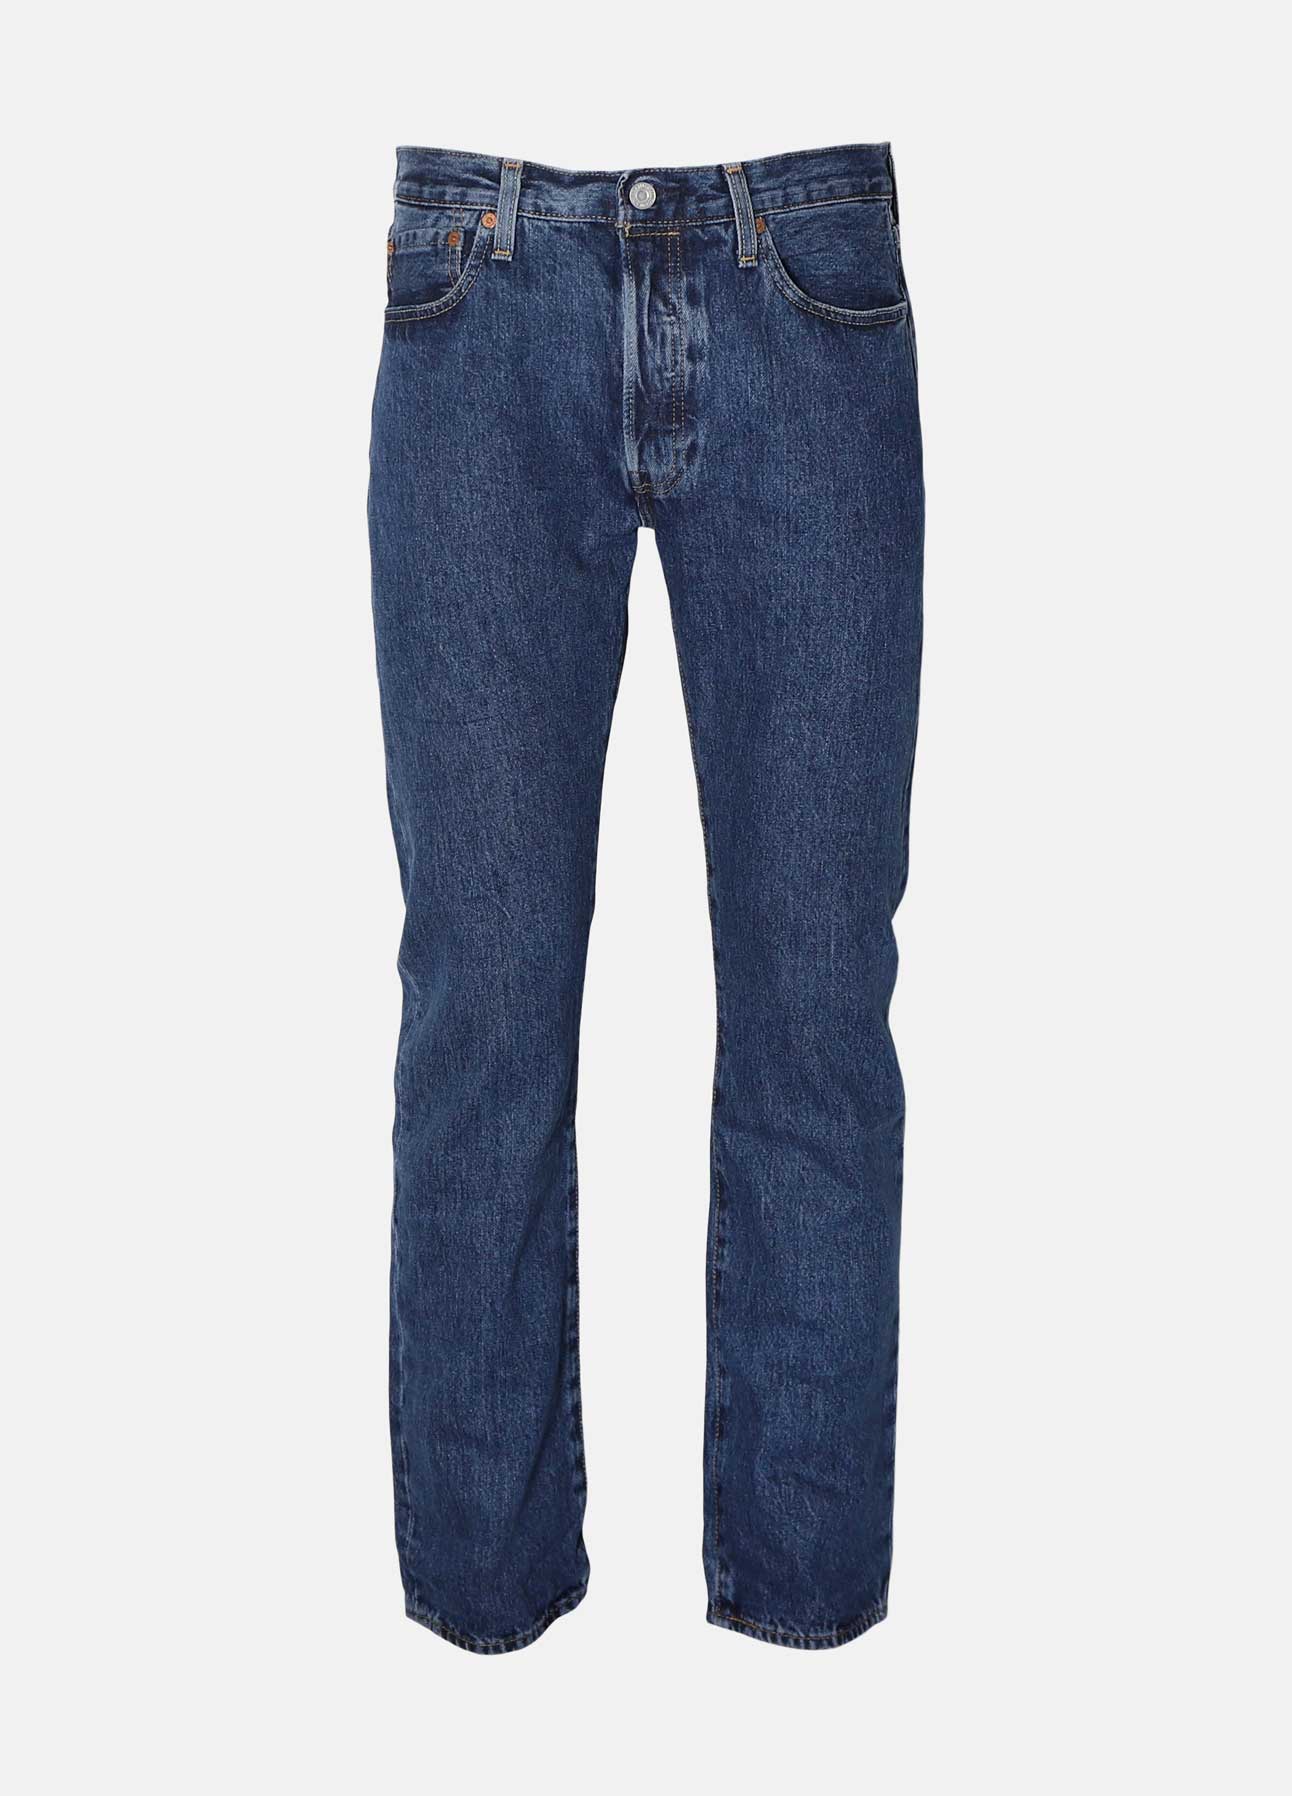 blå stone wash 501 jeans fra levis